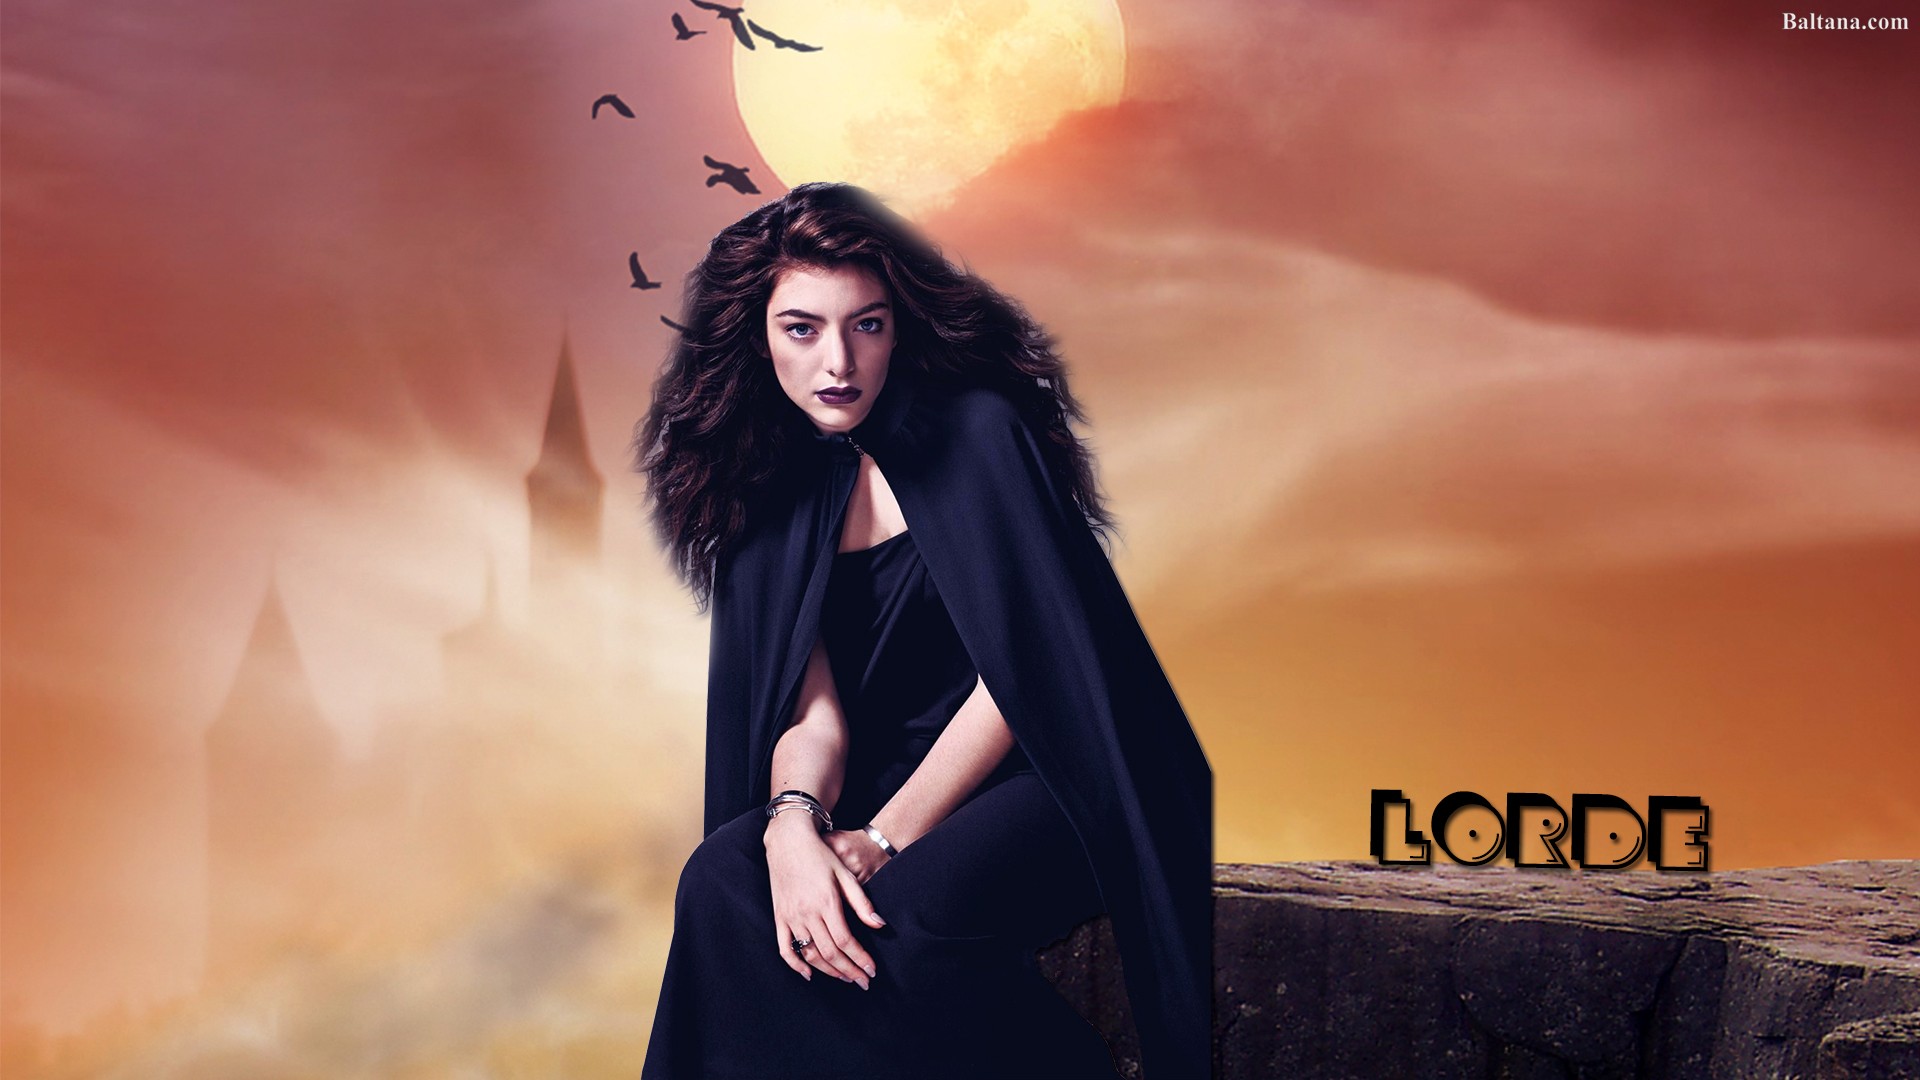 Lorde 2018 Wallpaper - Lorde 2018 , HD Wallpaper & Backgrounds